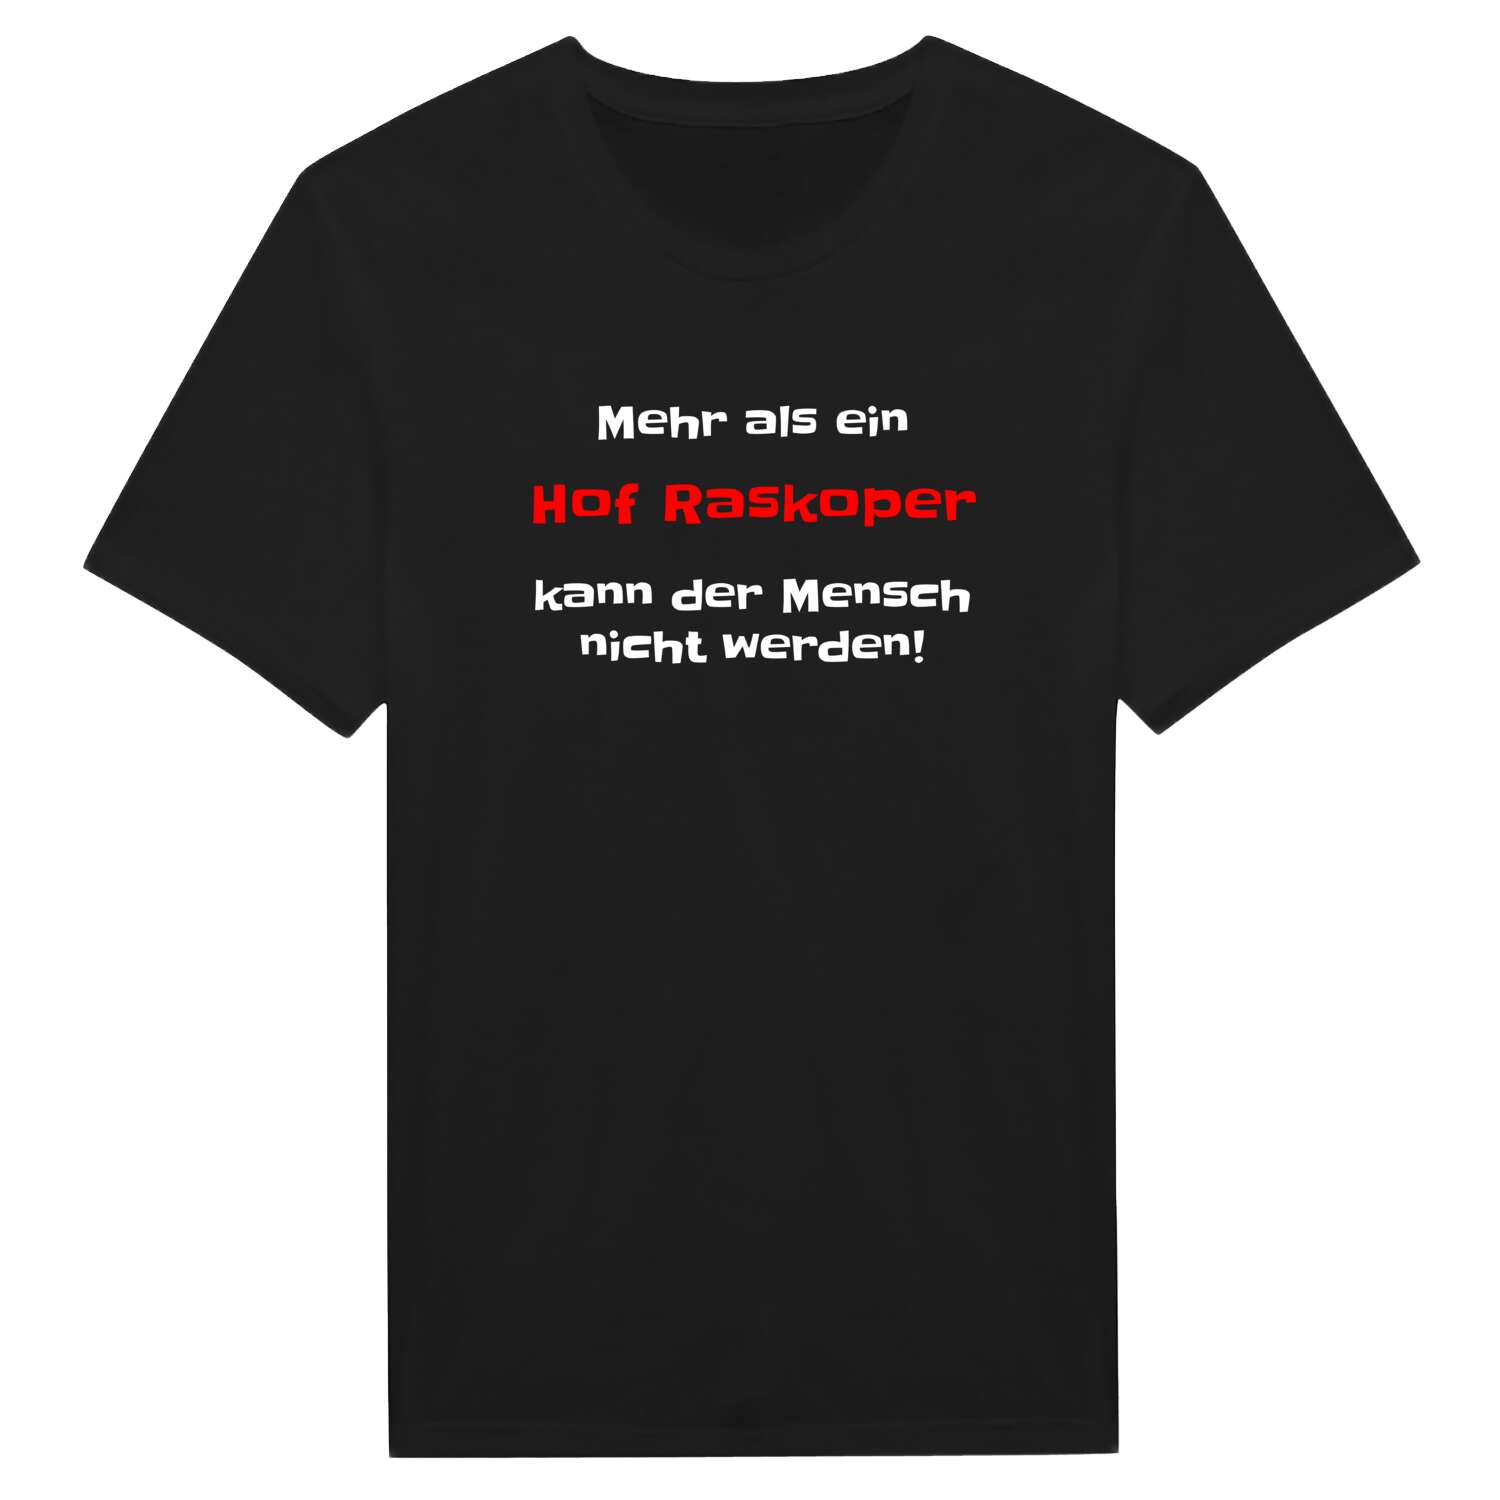 Hof Raskop T-Shirt »Mehr als ein«